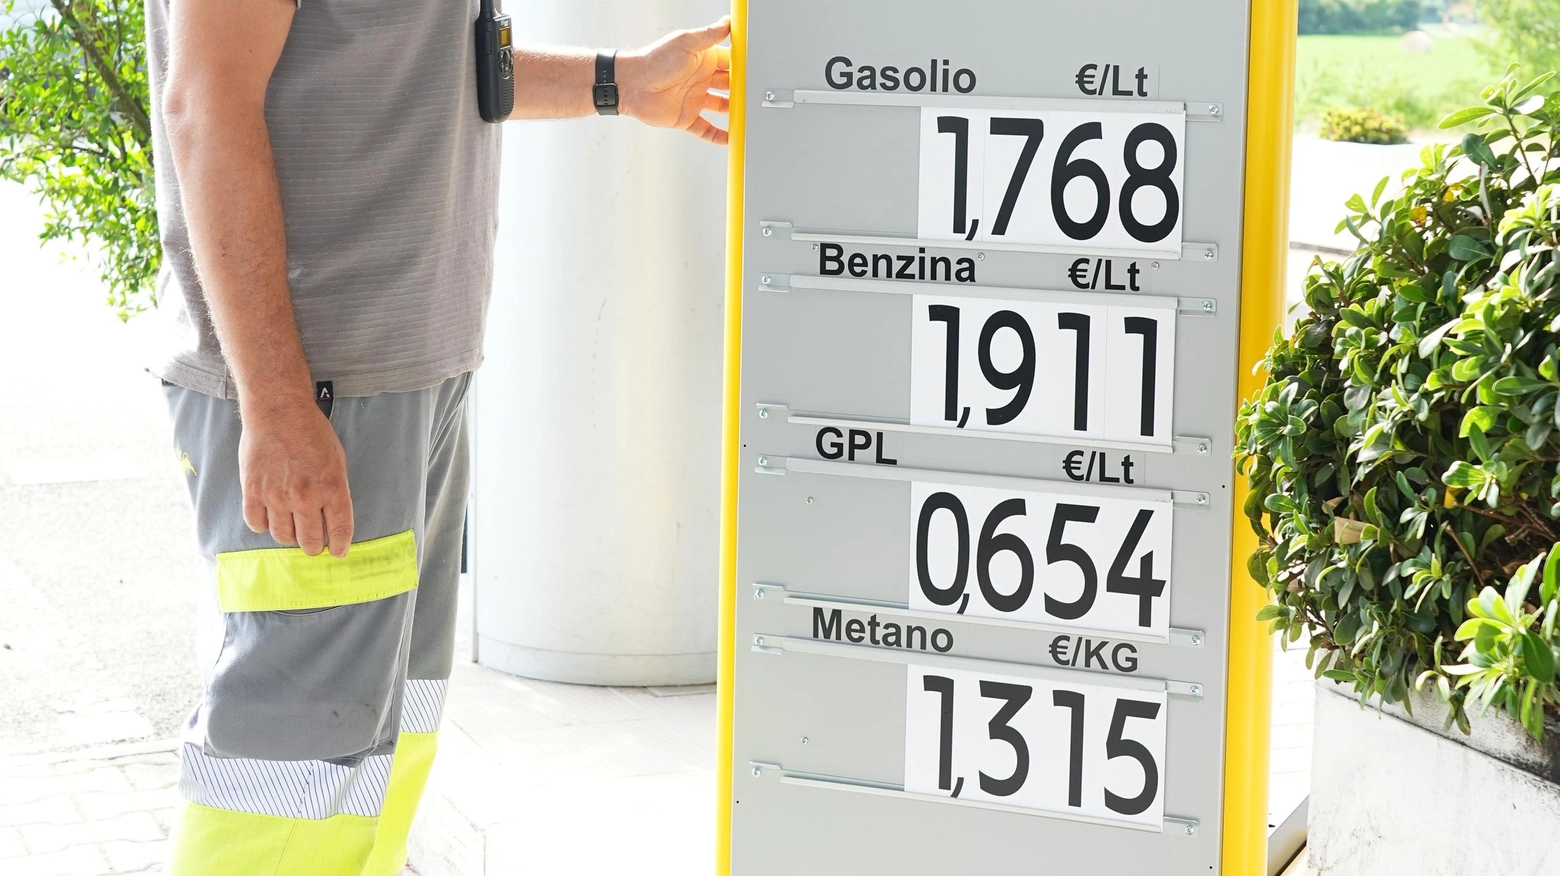 Carburante, le nuove regole   "Inutile esporre i cartelli coi prezzi,  per noi è solo una perdita di tempo"